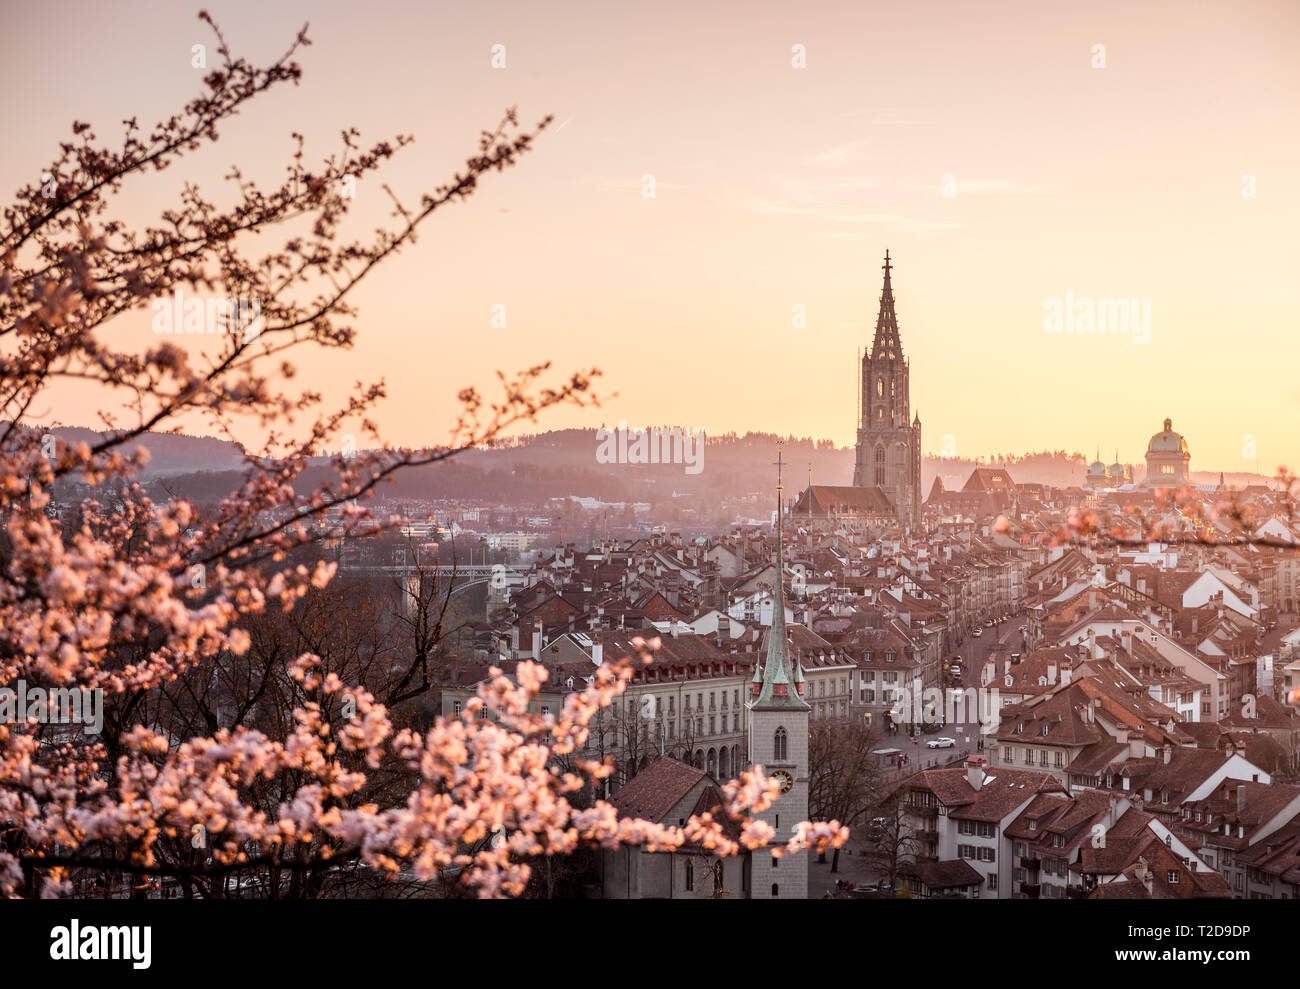 Sonnenuntergang über der Stadt Bern während Kirschblüte im Frühling mit Berner Münster und Altstadt Foto Stock